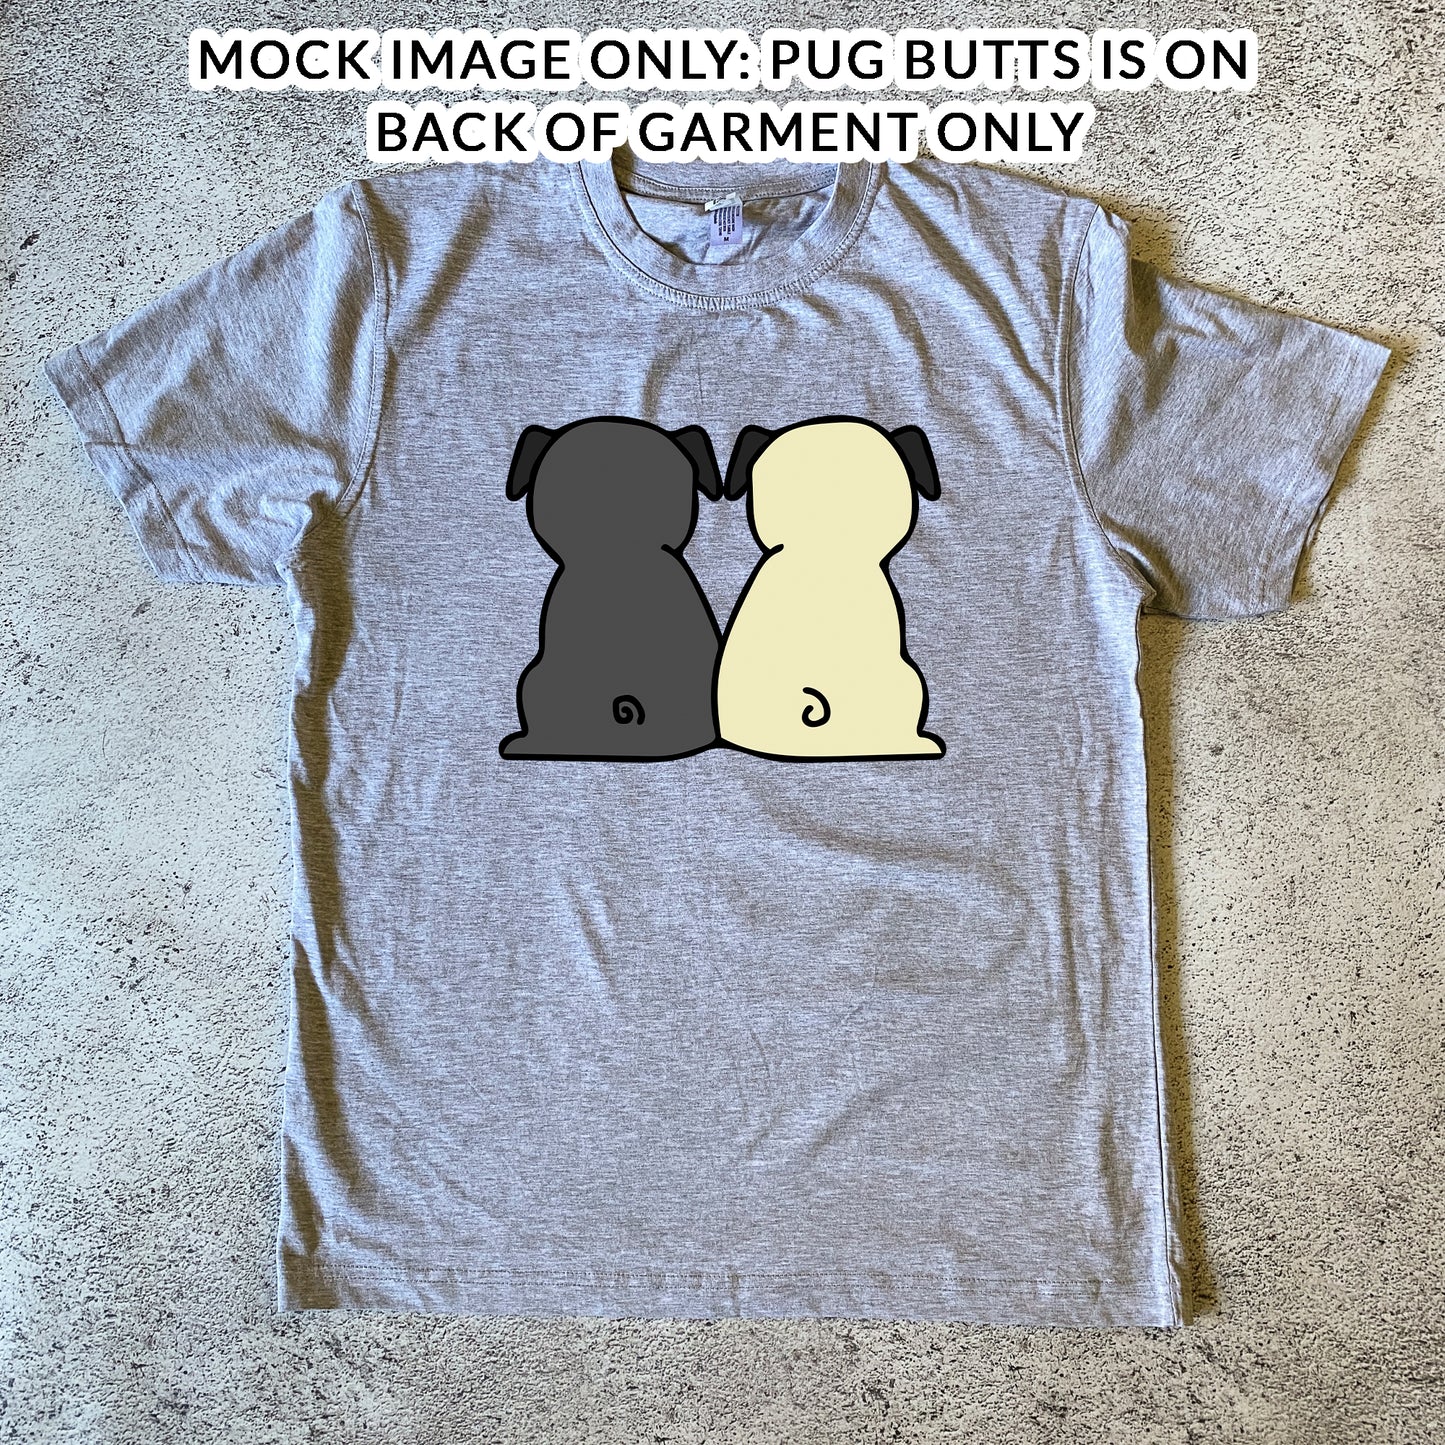 Pug Butts Women's T-Shirt